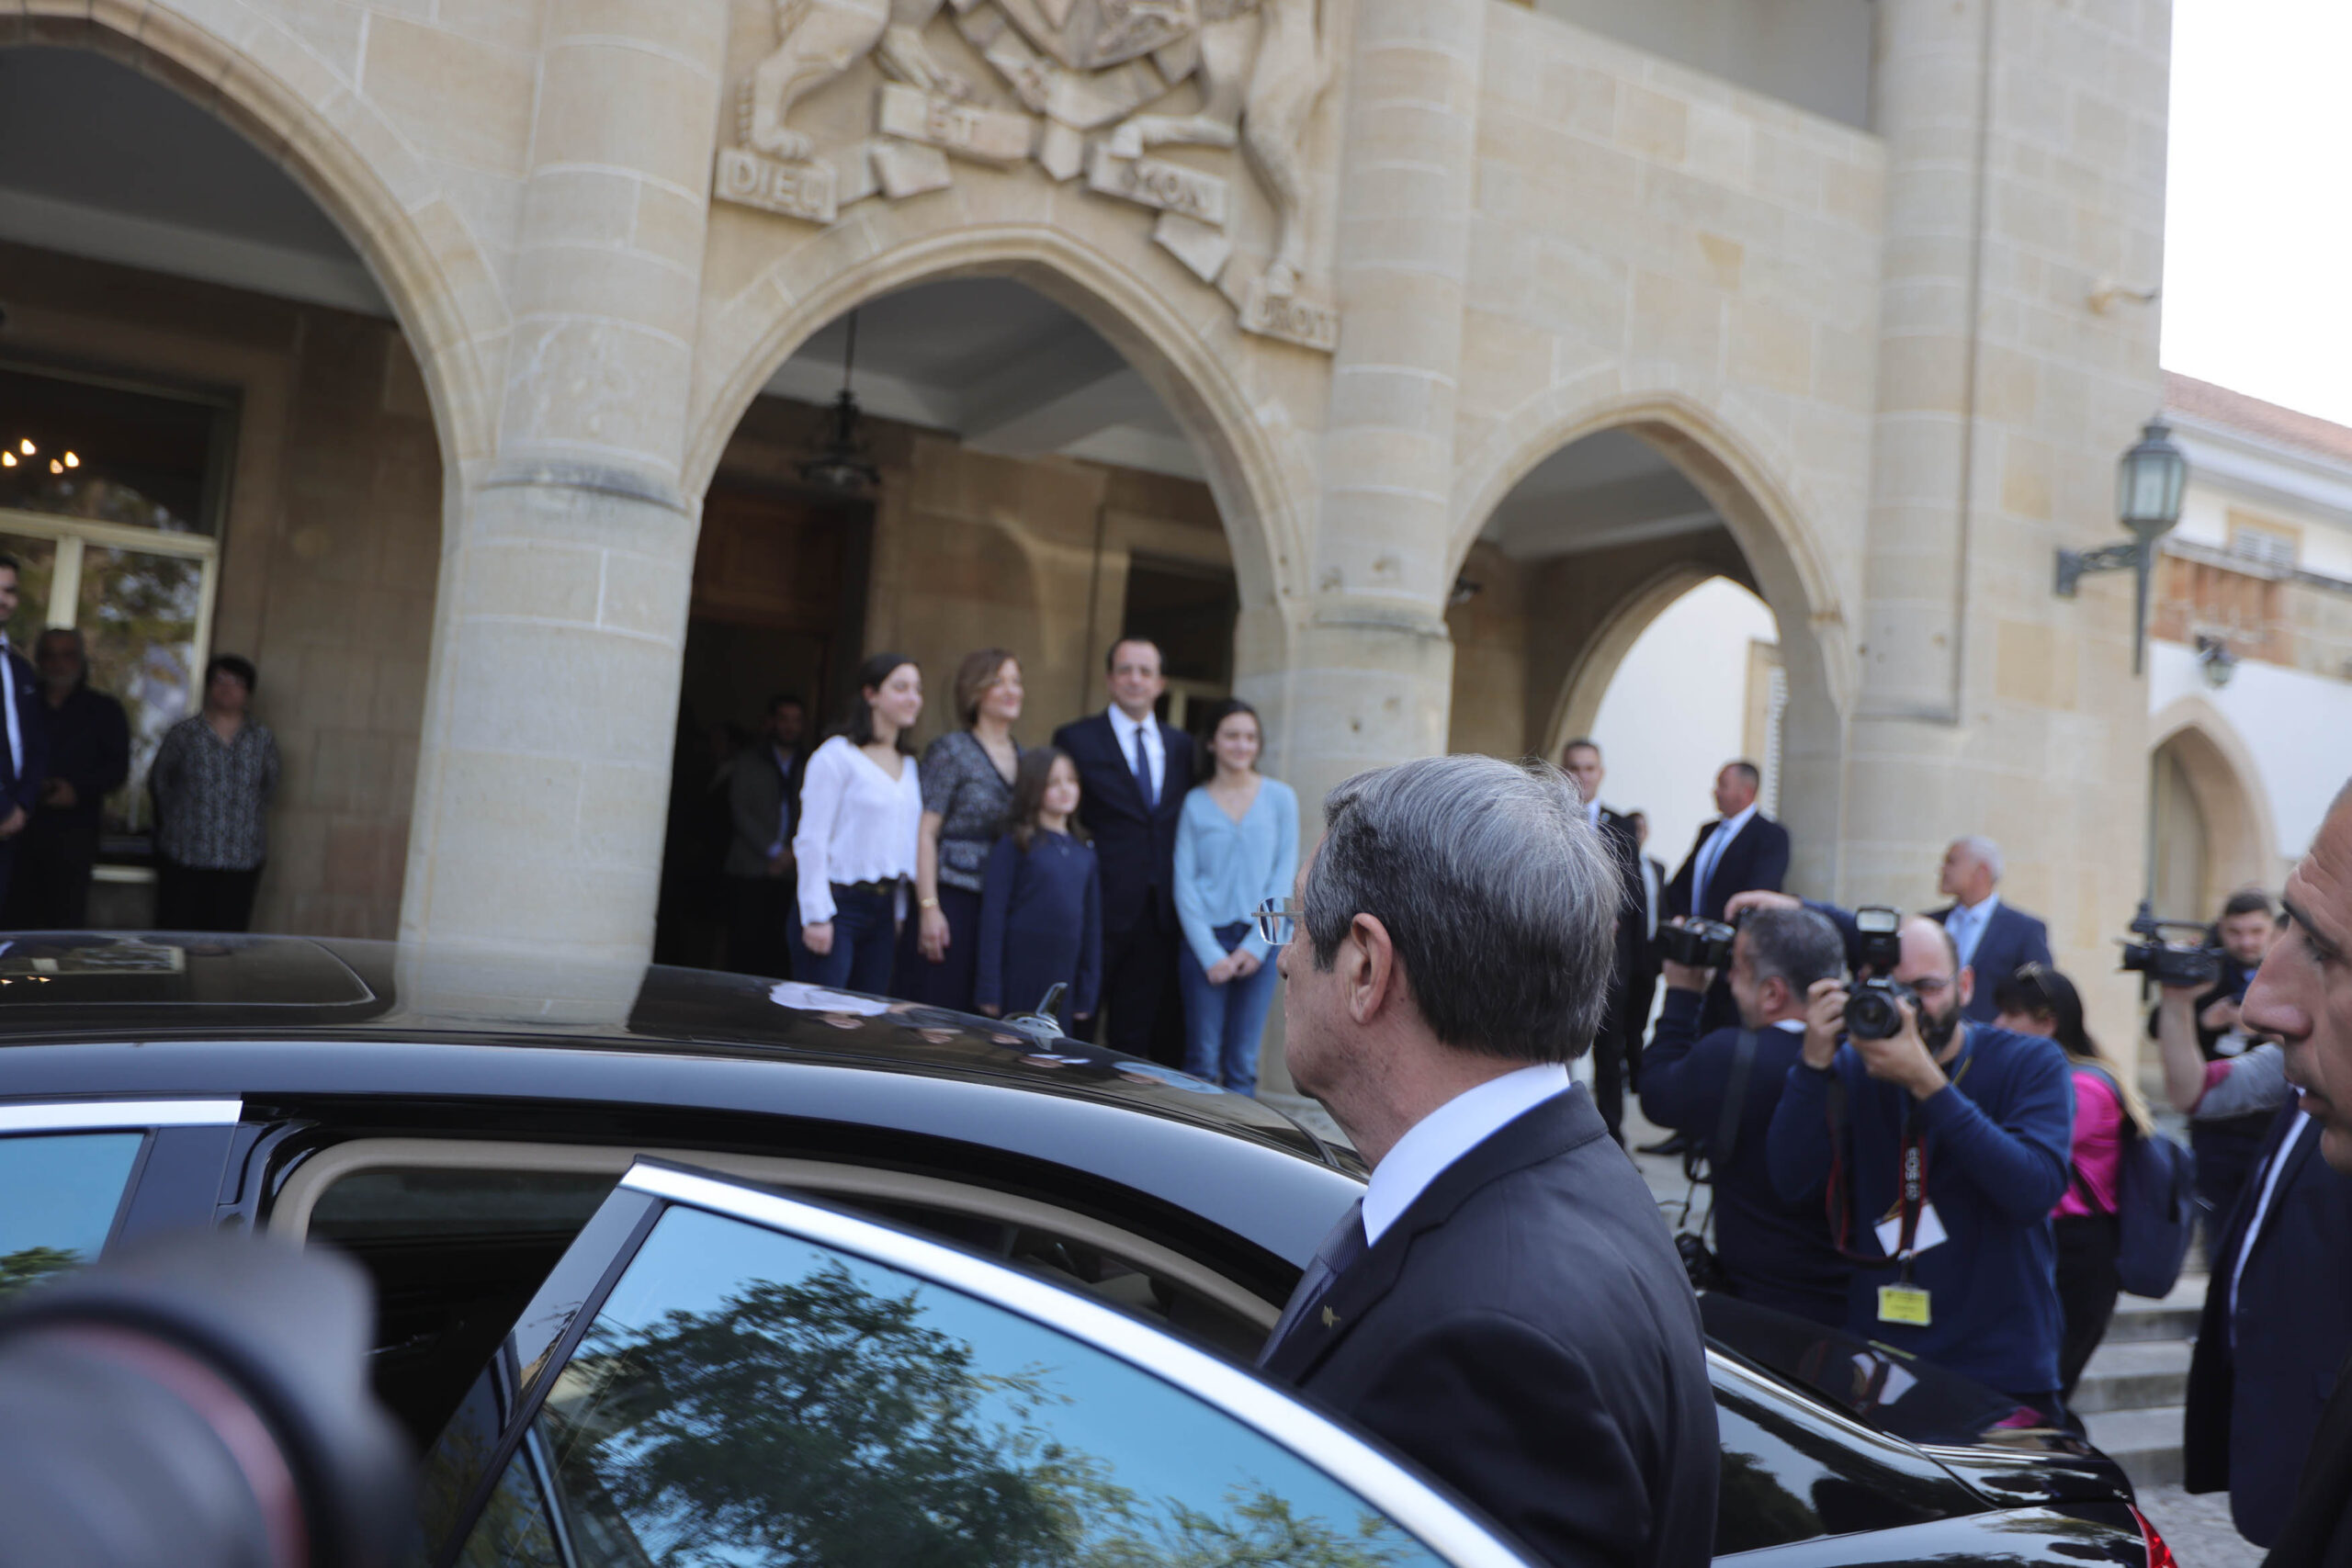 Ο Πρόεδρος της Δημοκρατίας Ν. Χριστοδουλίδης παρέλαβε την προεδρία από τον τέως Πρόεδρο (Φωτογραφίες)